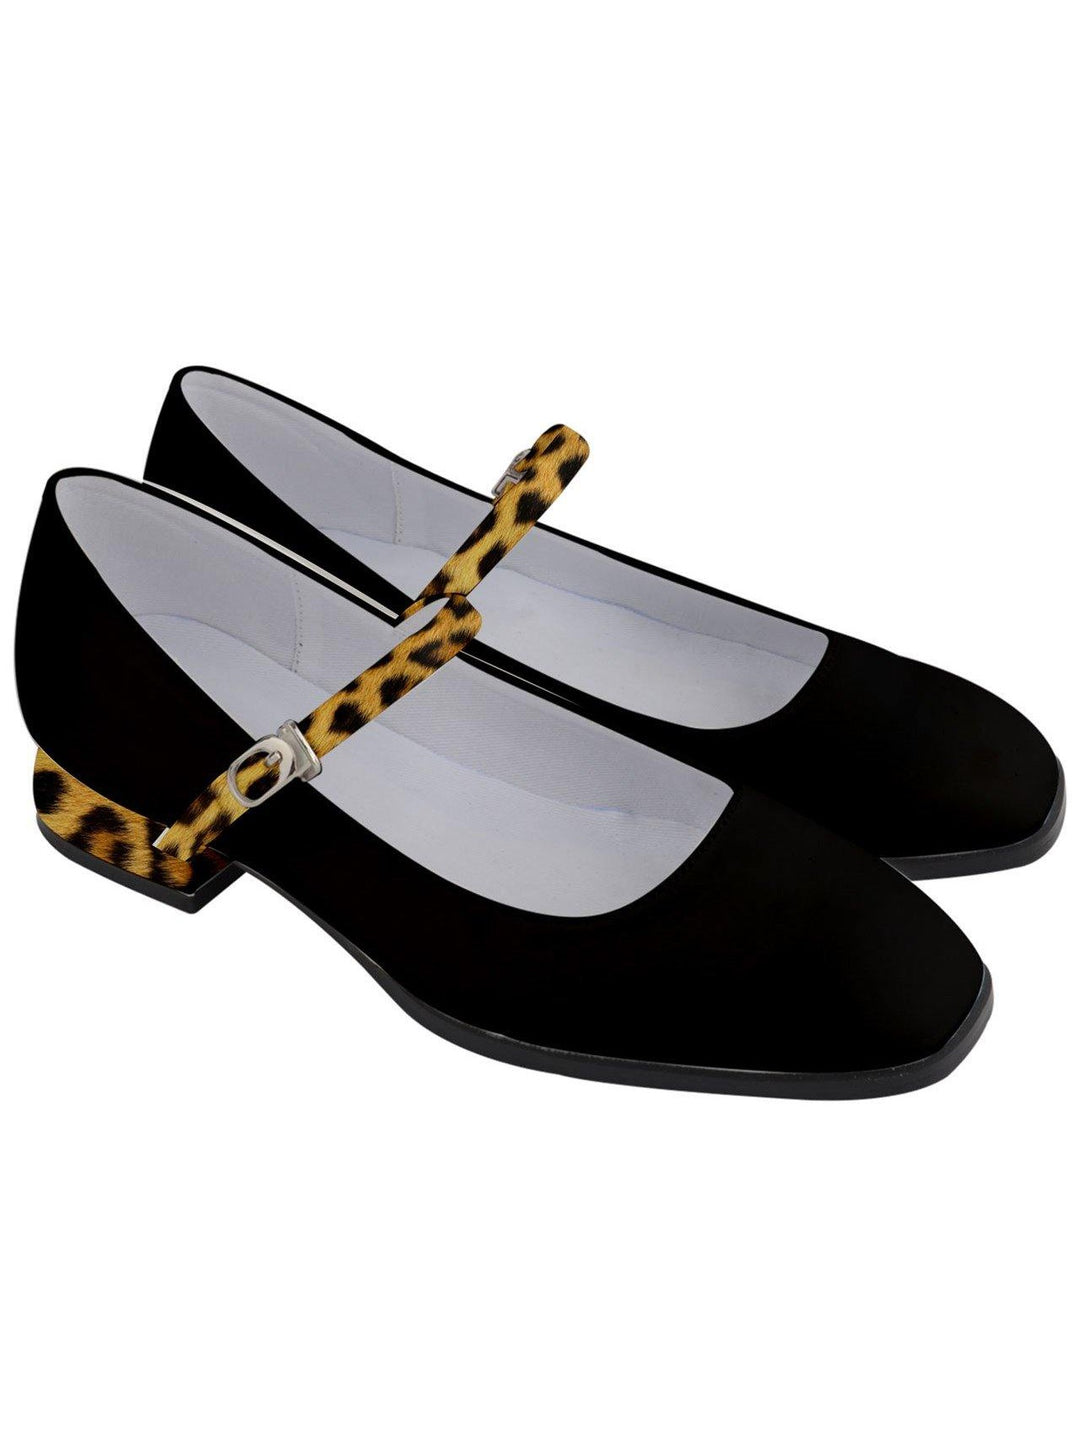 BLACK LEOPARD TRIM Women's Mary Jane Shoes